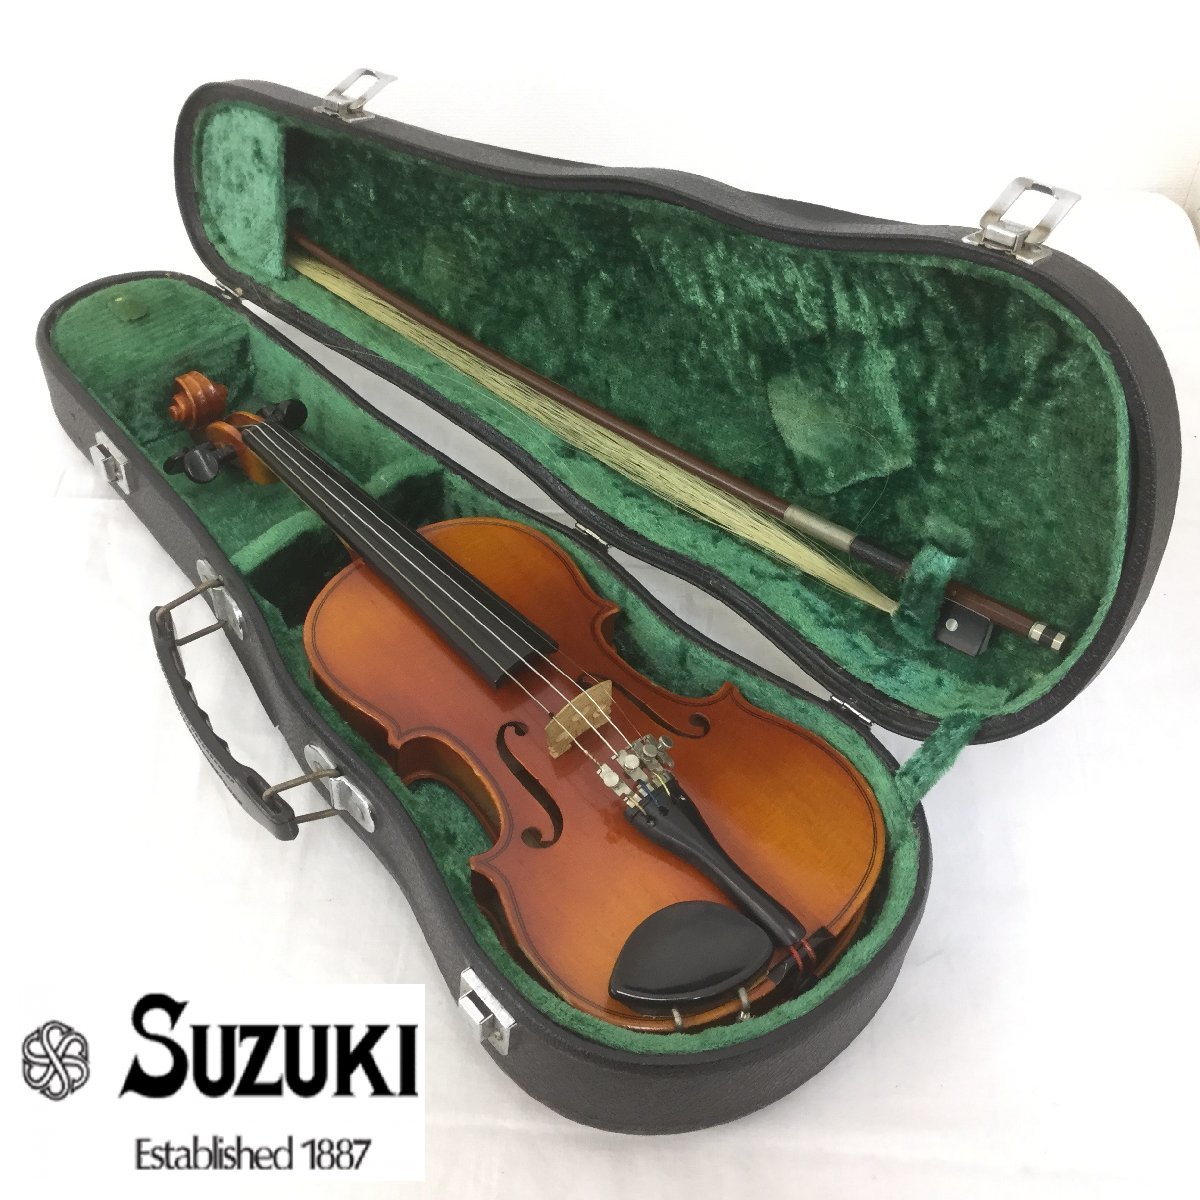 【ジャンク】SUZUKI VIOLIN No.280 1/8 1983年製 スズキバイオリン 鈴木バイオリン 弦楽器 弓/ハードケース付き_画像1